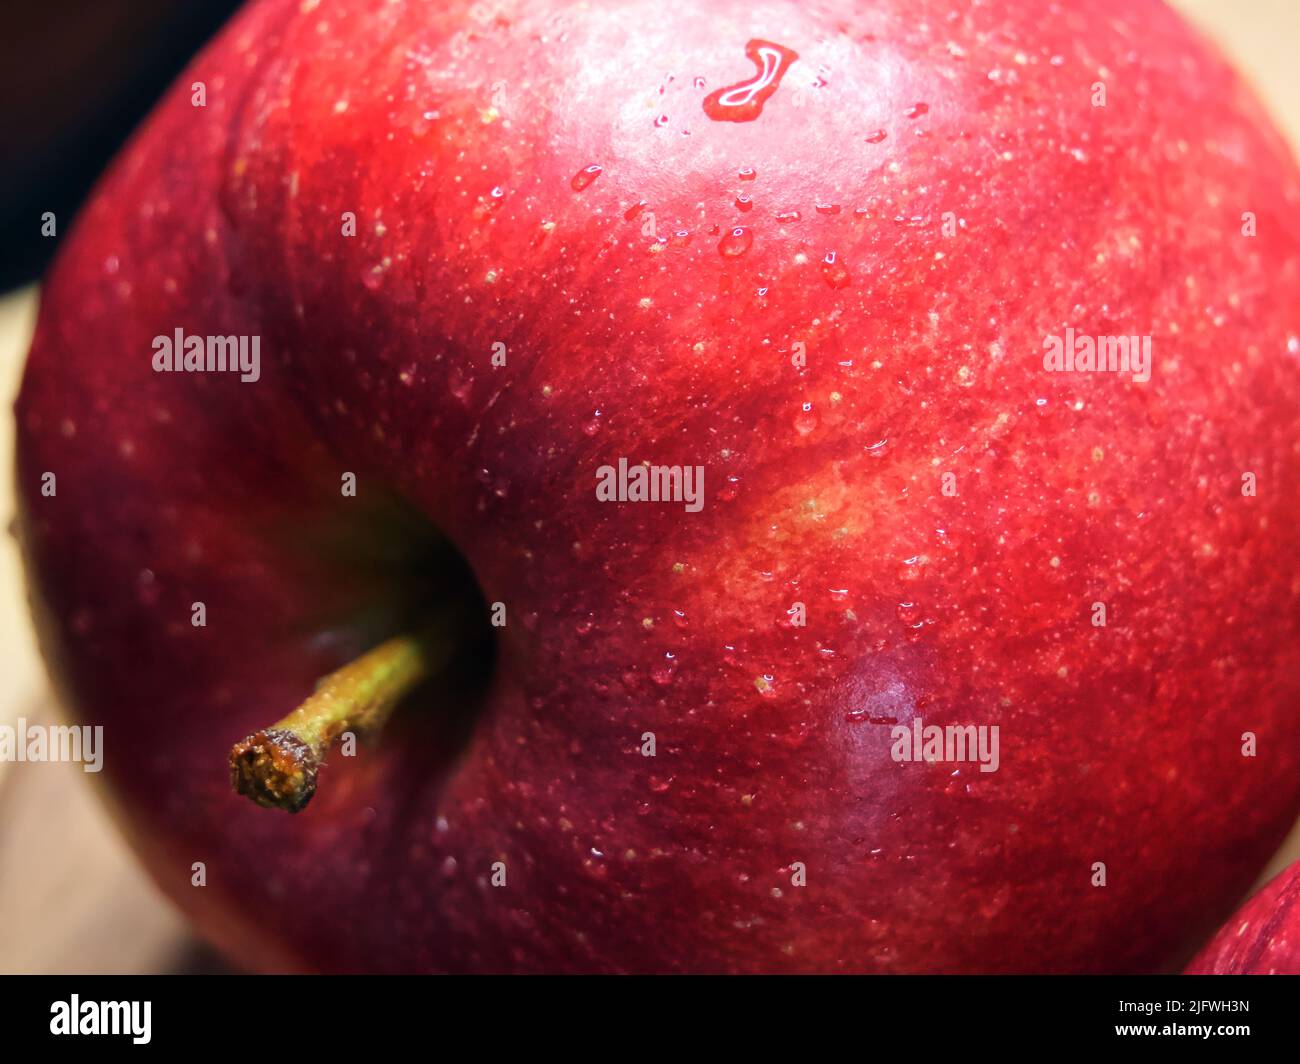 Grande mela rossa matura, primo piano. Gocce d'acqua su una buccia di mela. Un bel frutto. Foto Stock